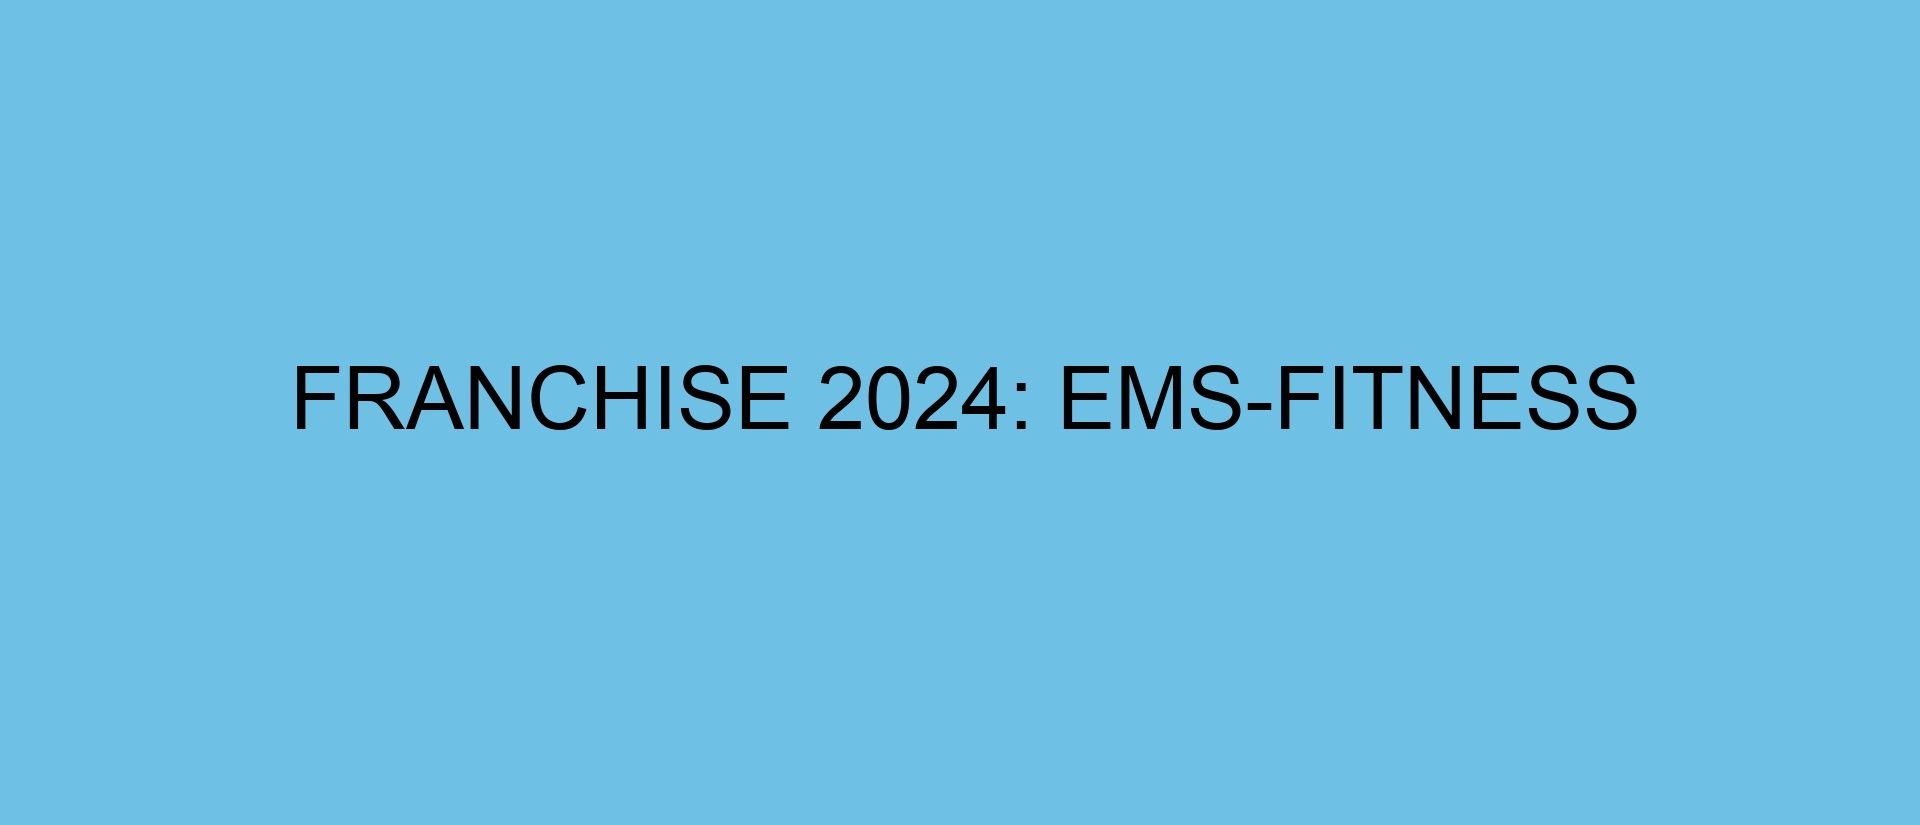 Franchise 2024: EMS-Fitness